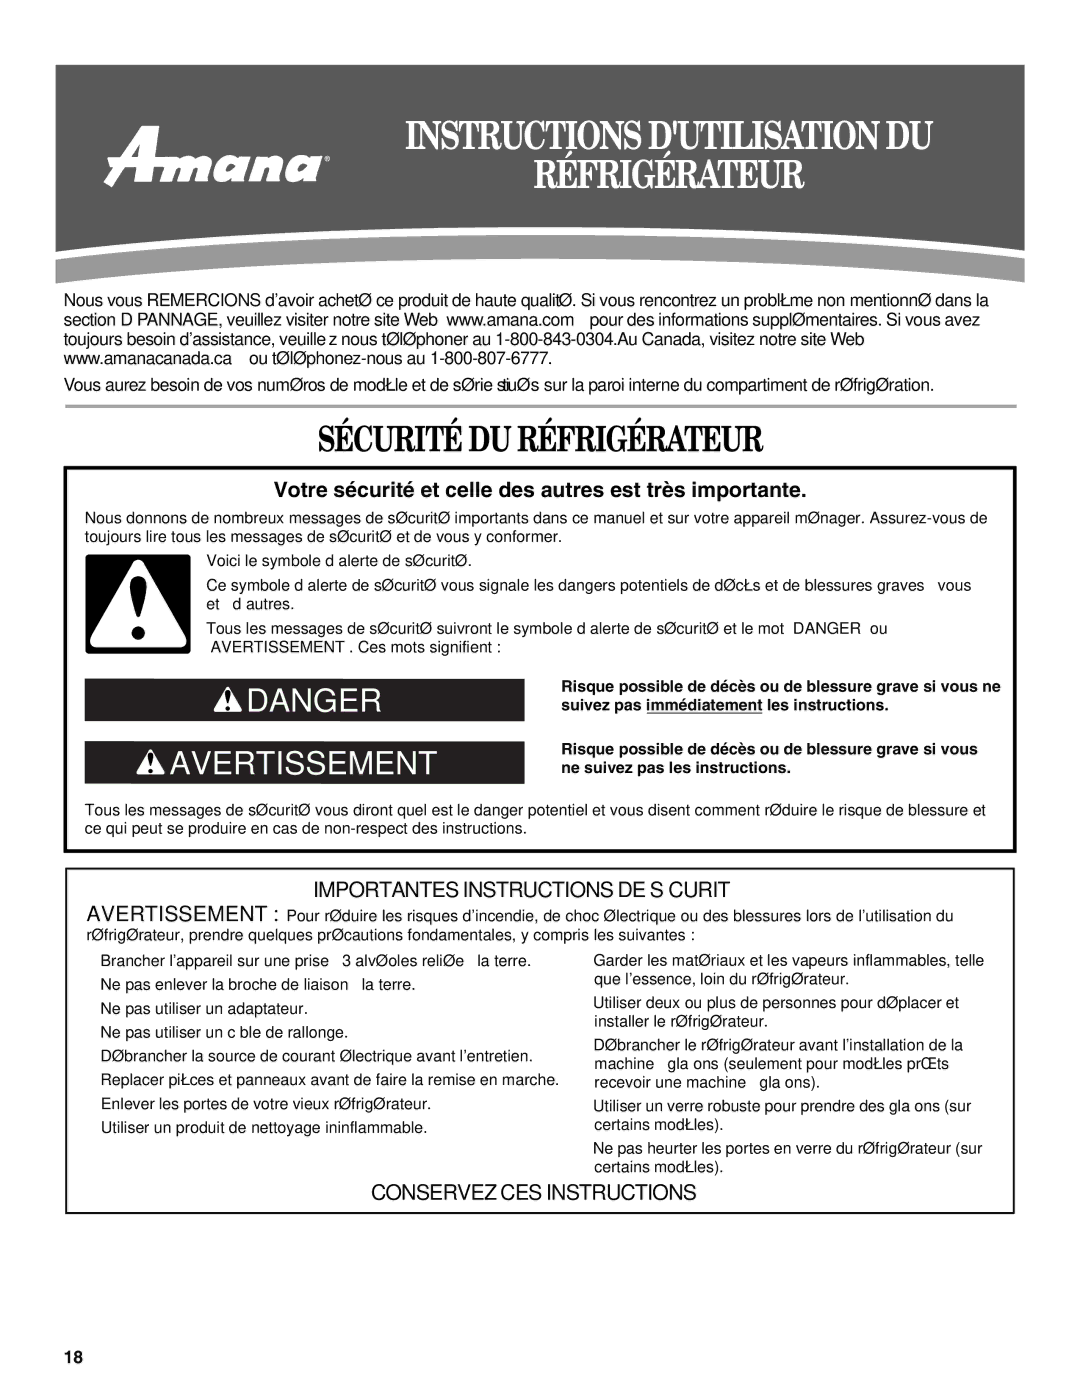 Amana W10321484A installation instructions Instructions Dutilisation DU Réfrigérateur, Sécurité DU Réfrigérateur 